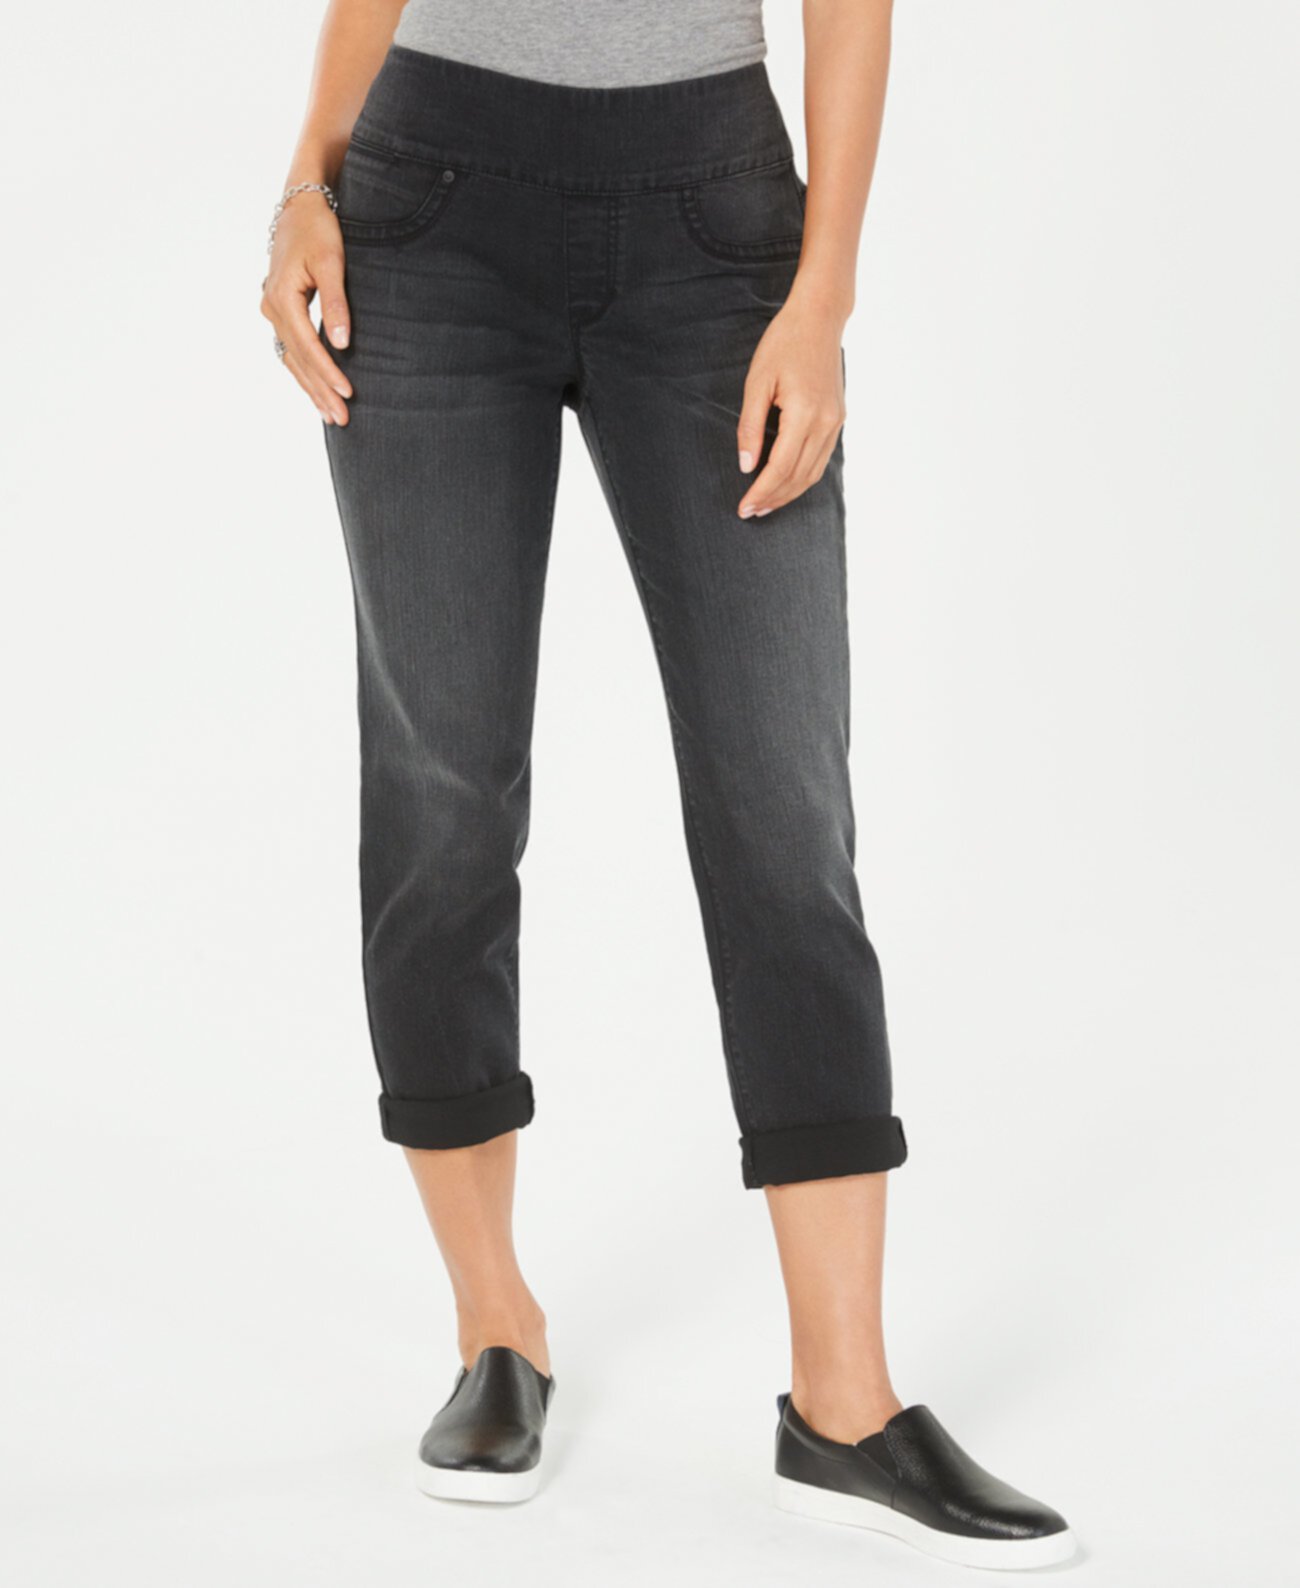 Узкие джинсы-скинни с манжетами и потертостями, созданные для Macy's Style & Co